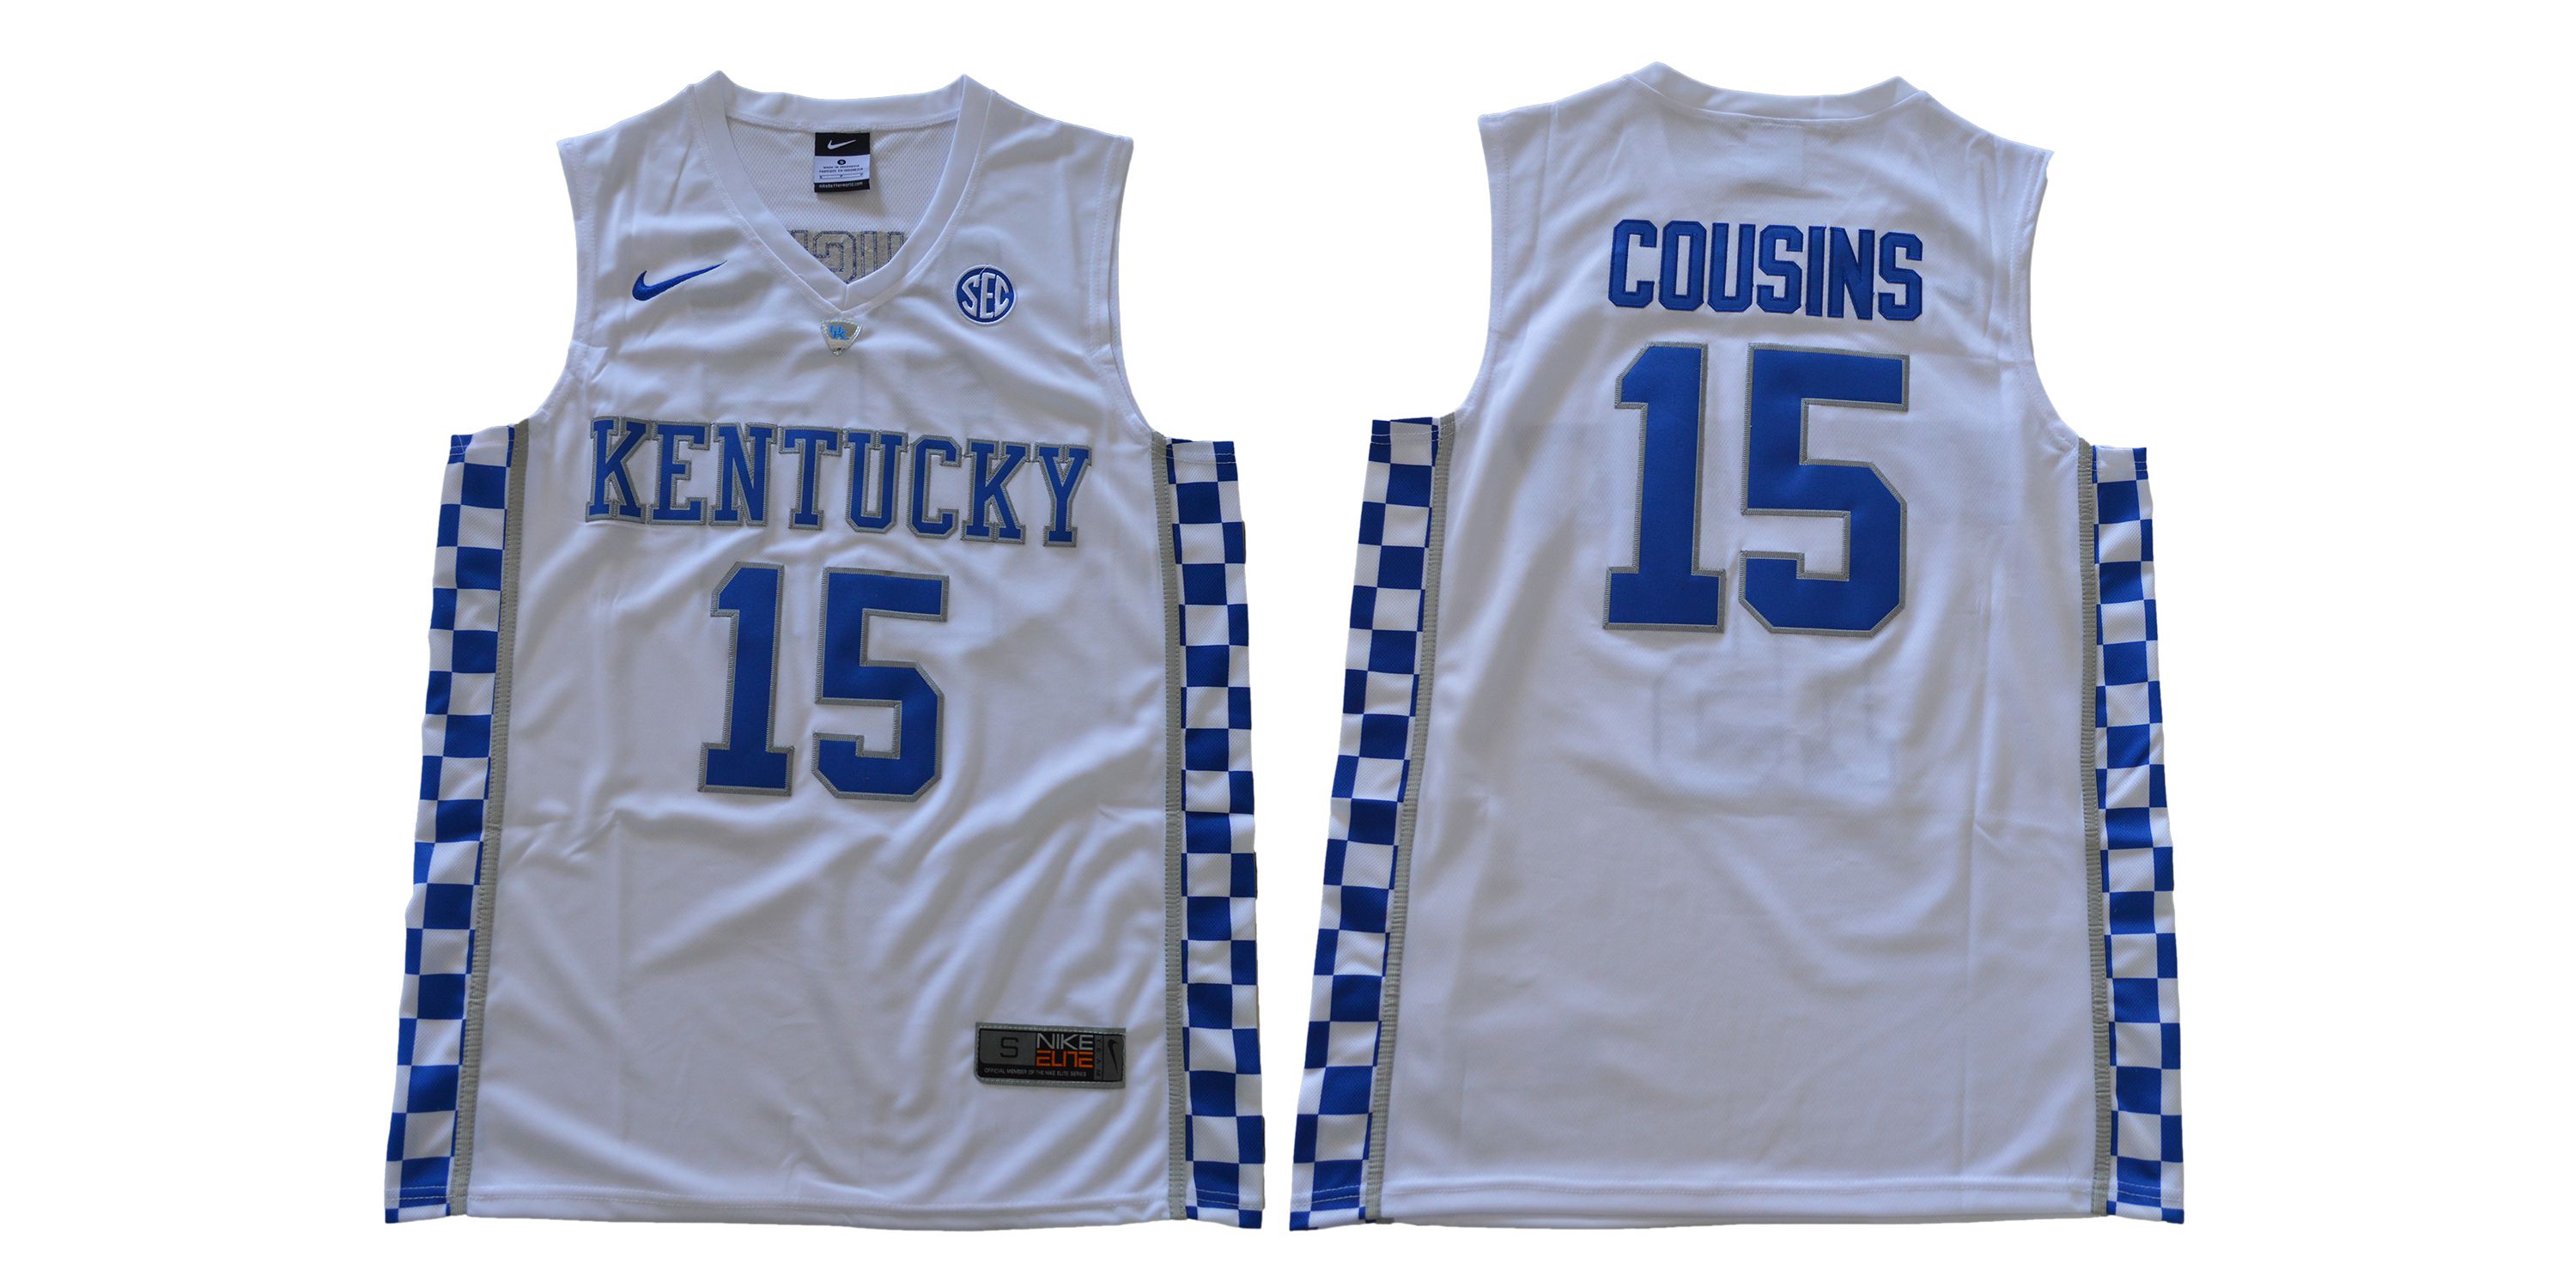 Men Kentucky Wildcats #15 Cousins White NBA NCAA Jerseys->->NCAA Jersey